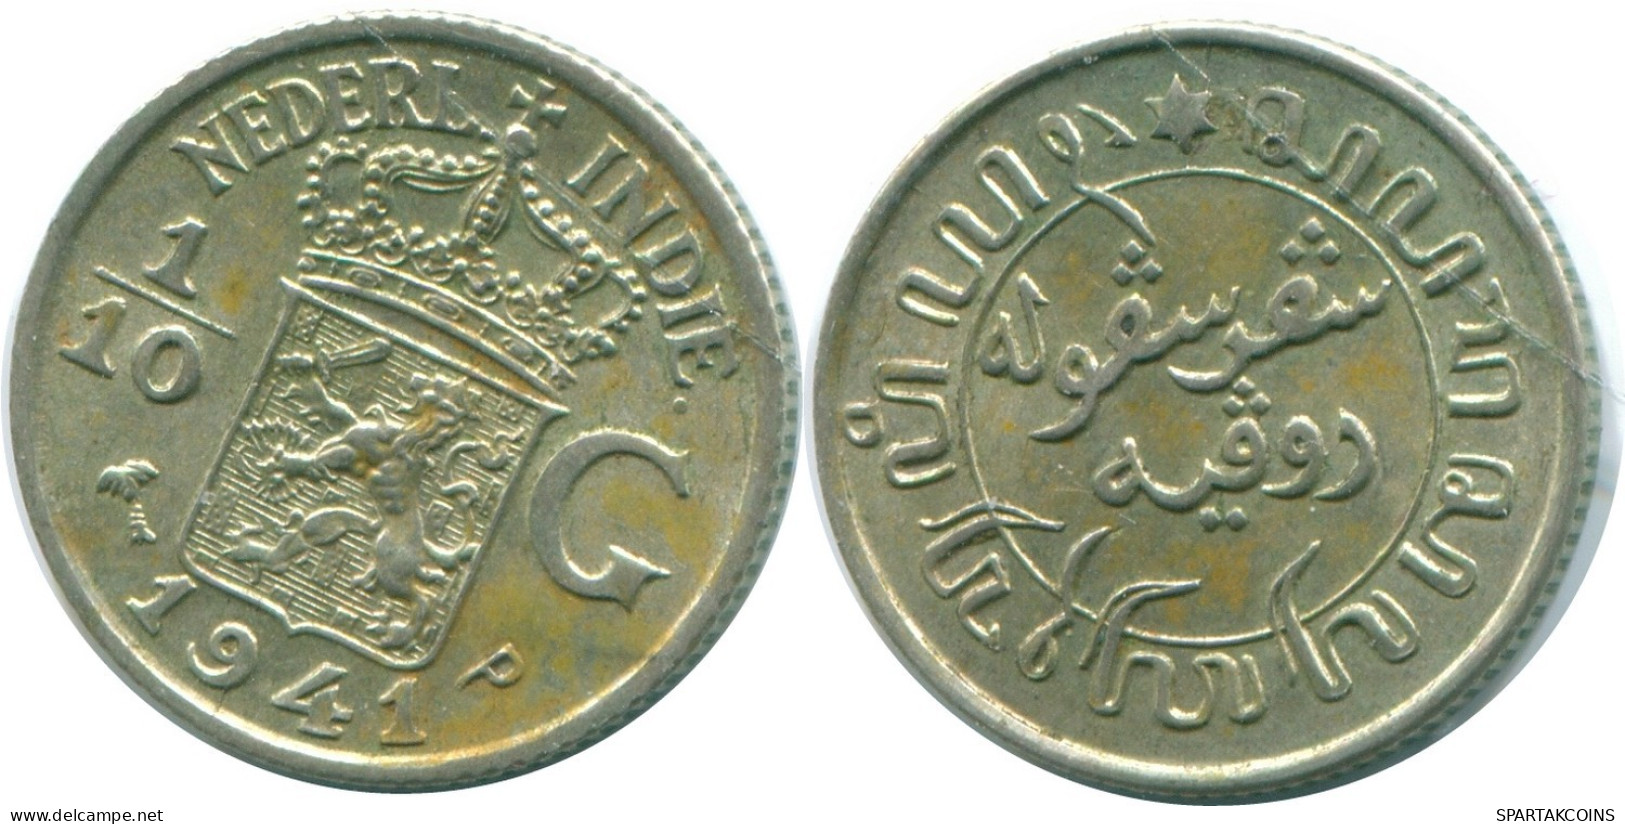 1/10 GULDEN 1941 P NIEDERLANDE OSTINDIEN SILBER Koloniale Münze #NL13840.3.D.A - Niederländisch-Indien